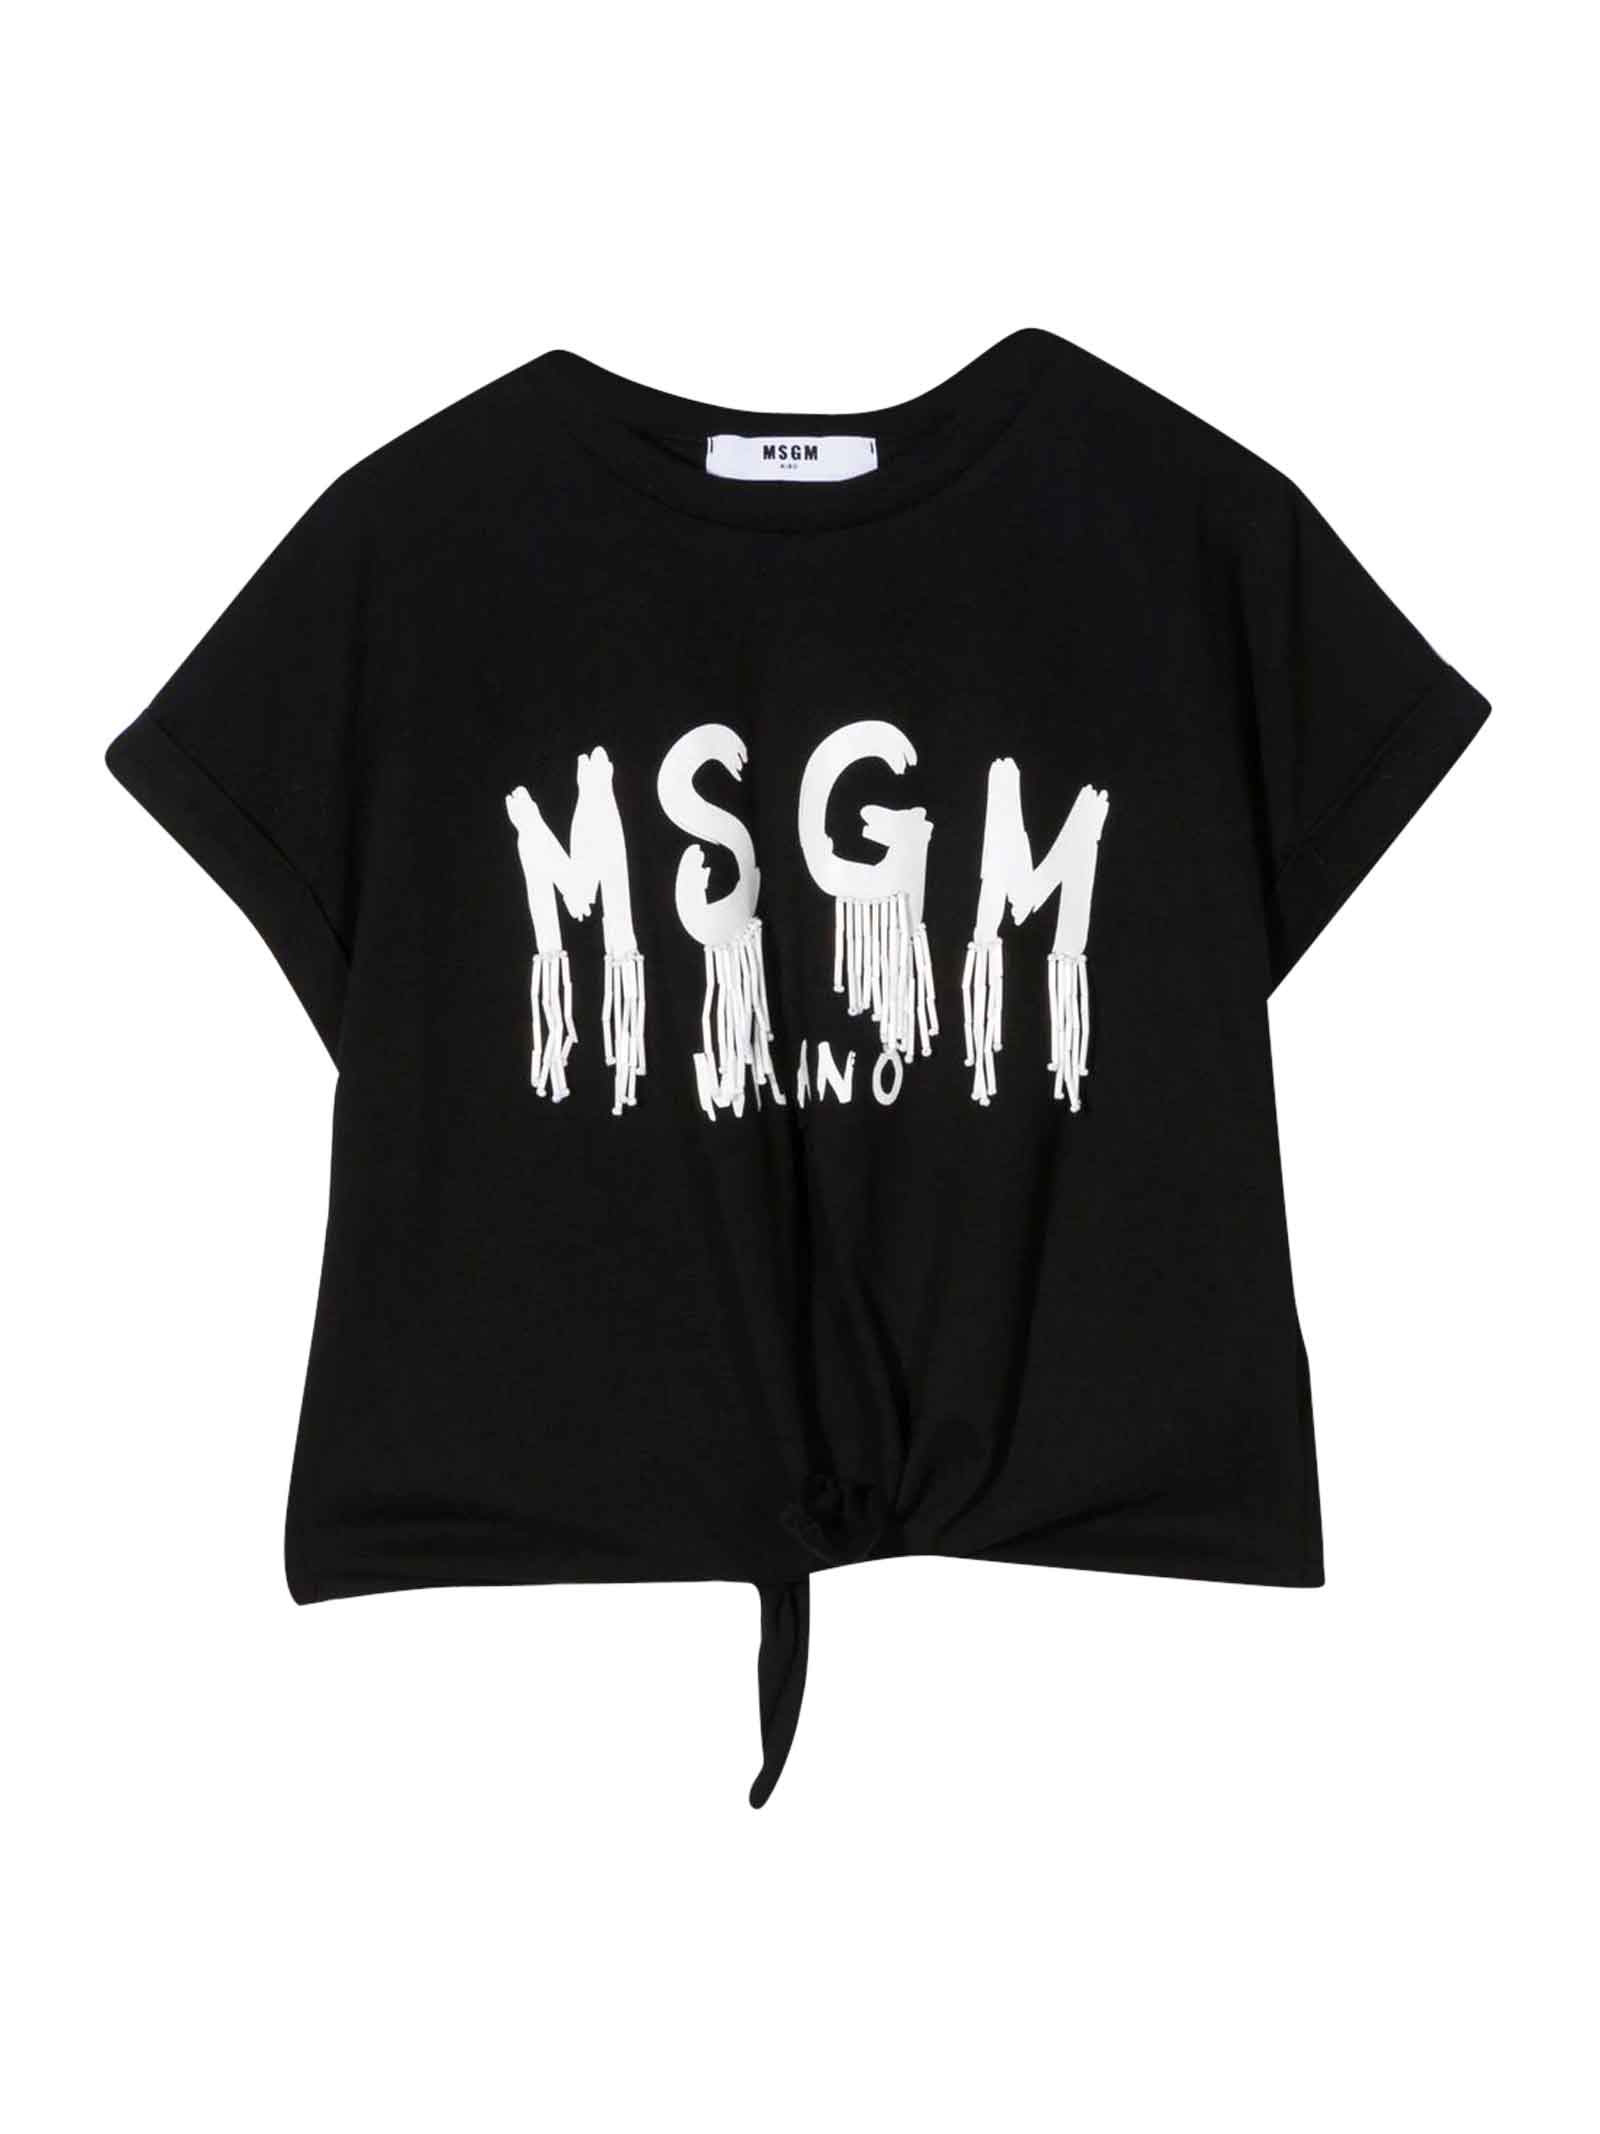 MSGM Black Teen Girl T-shirt